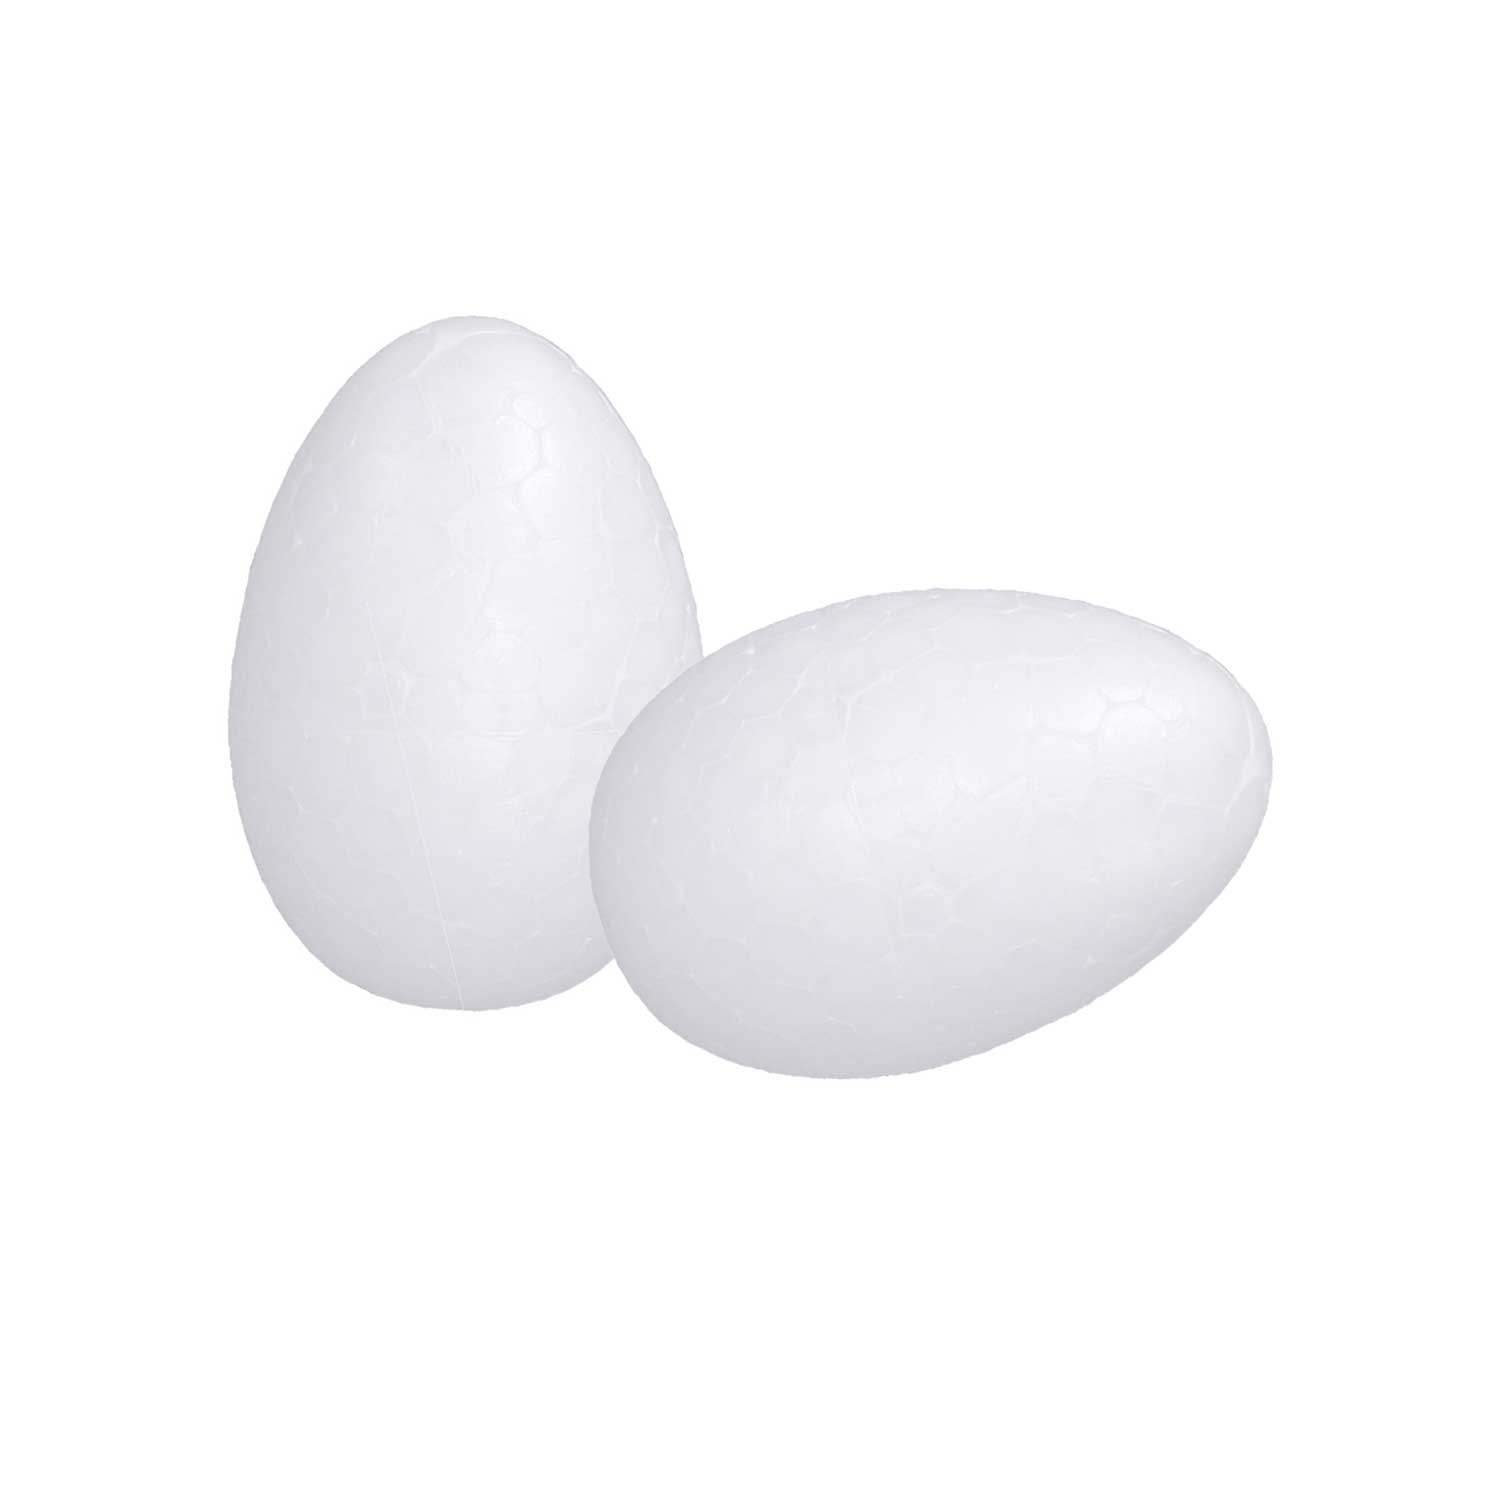 Bastel-Ei aus Styropor 2 Stück 8 cm